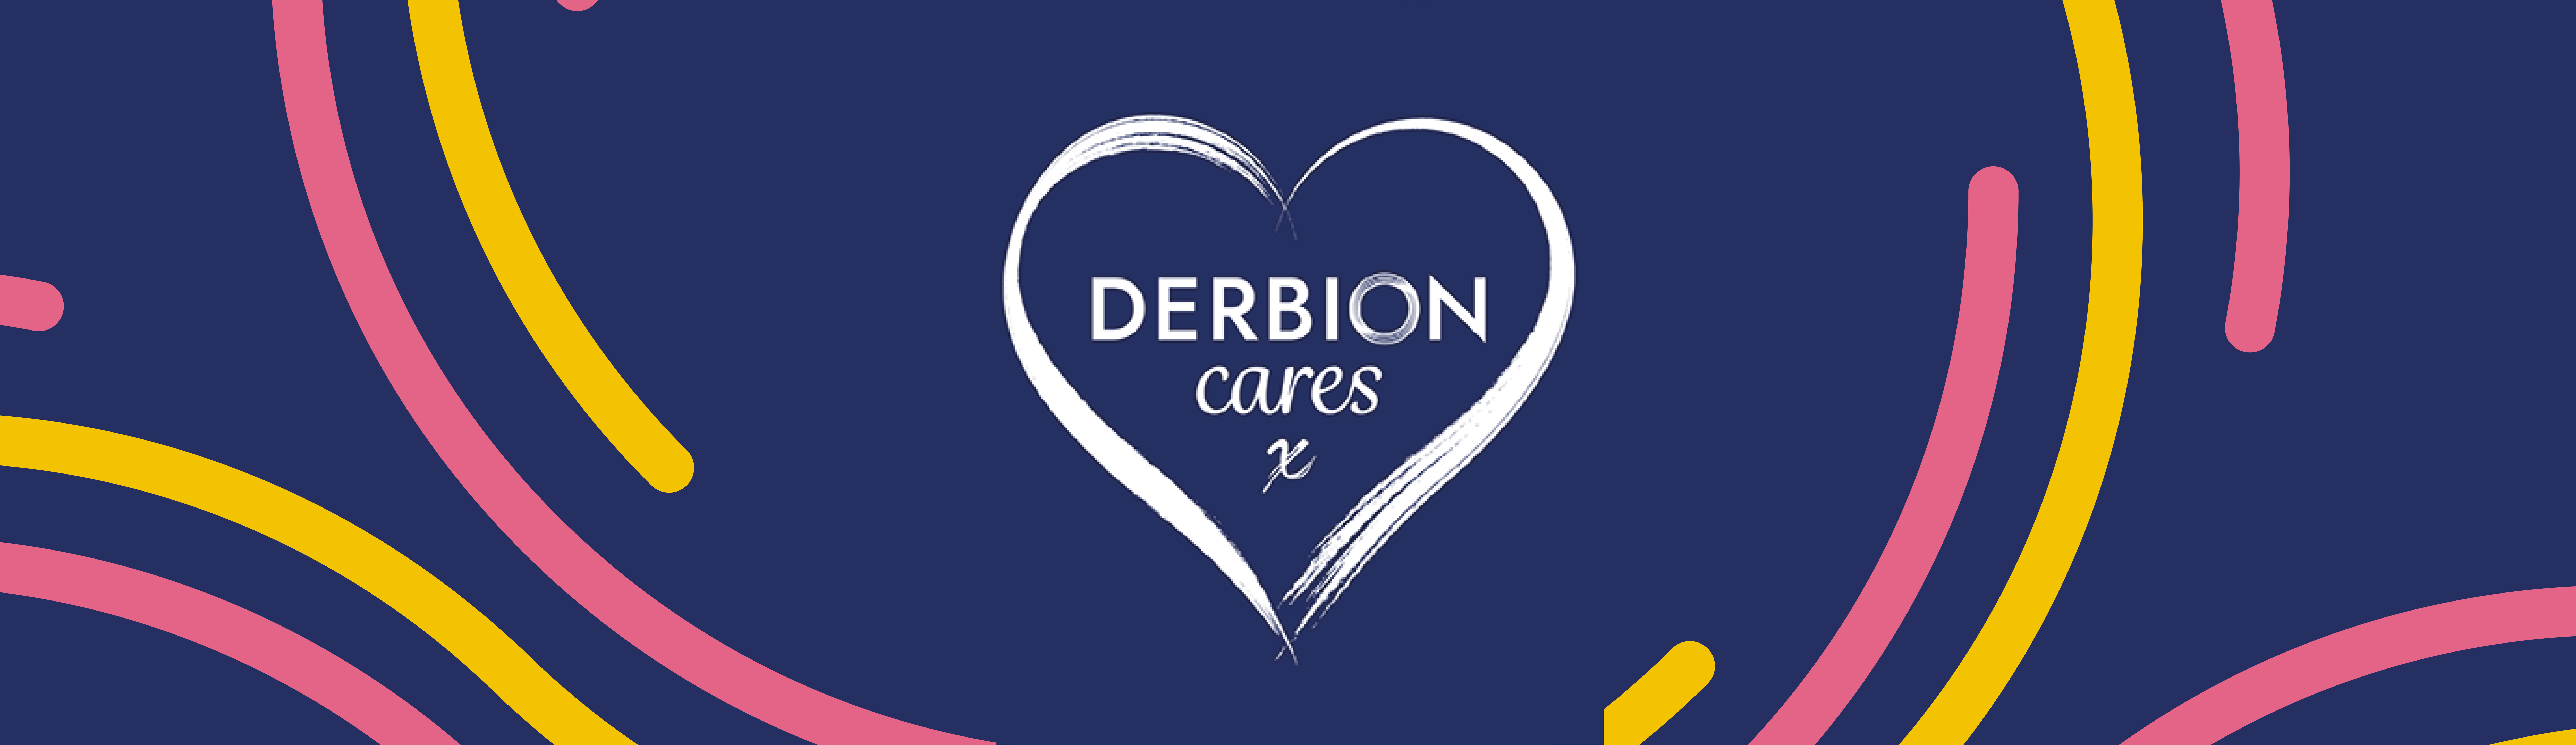 Derbion announces new charity partners